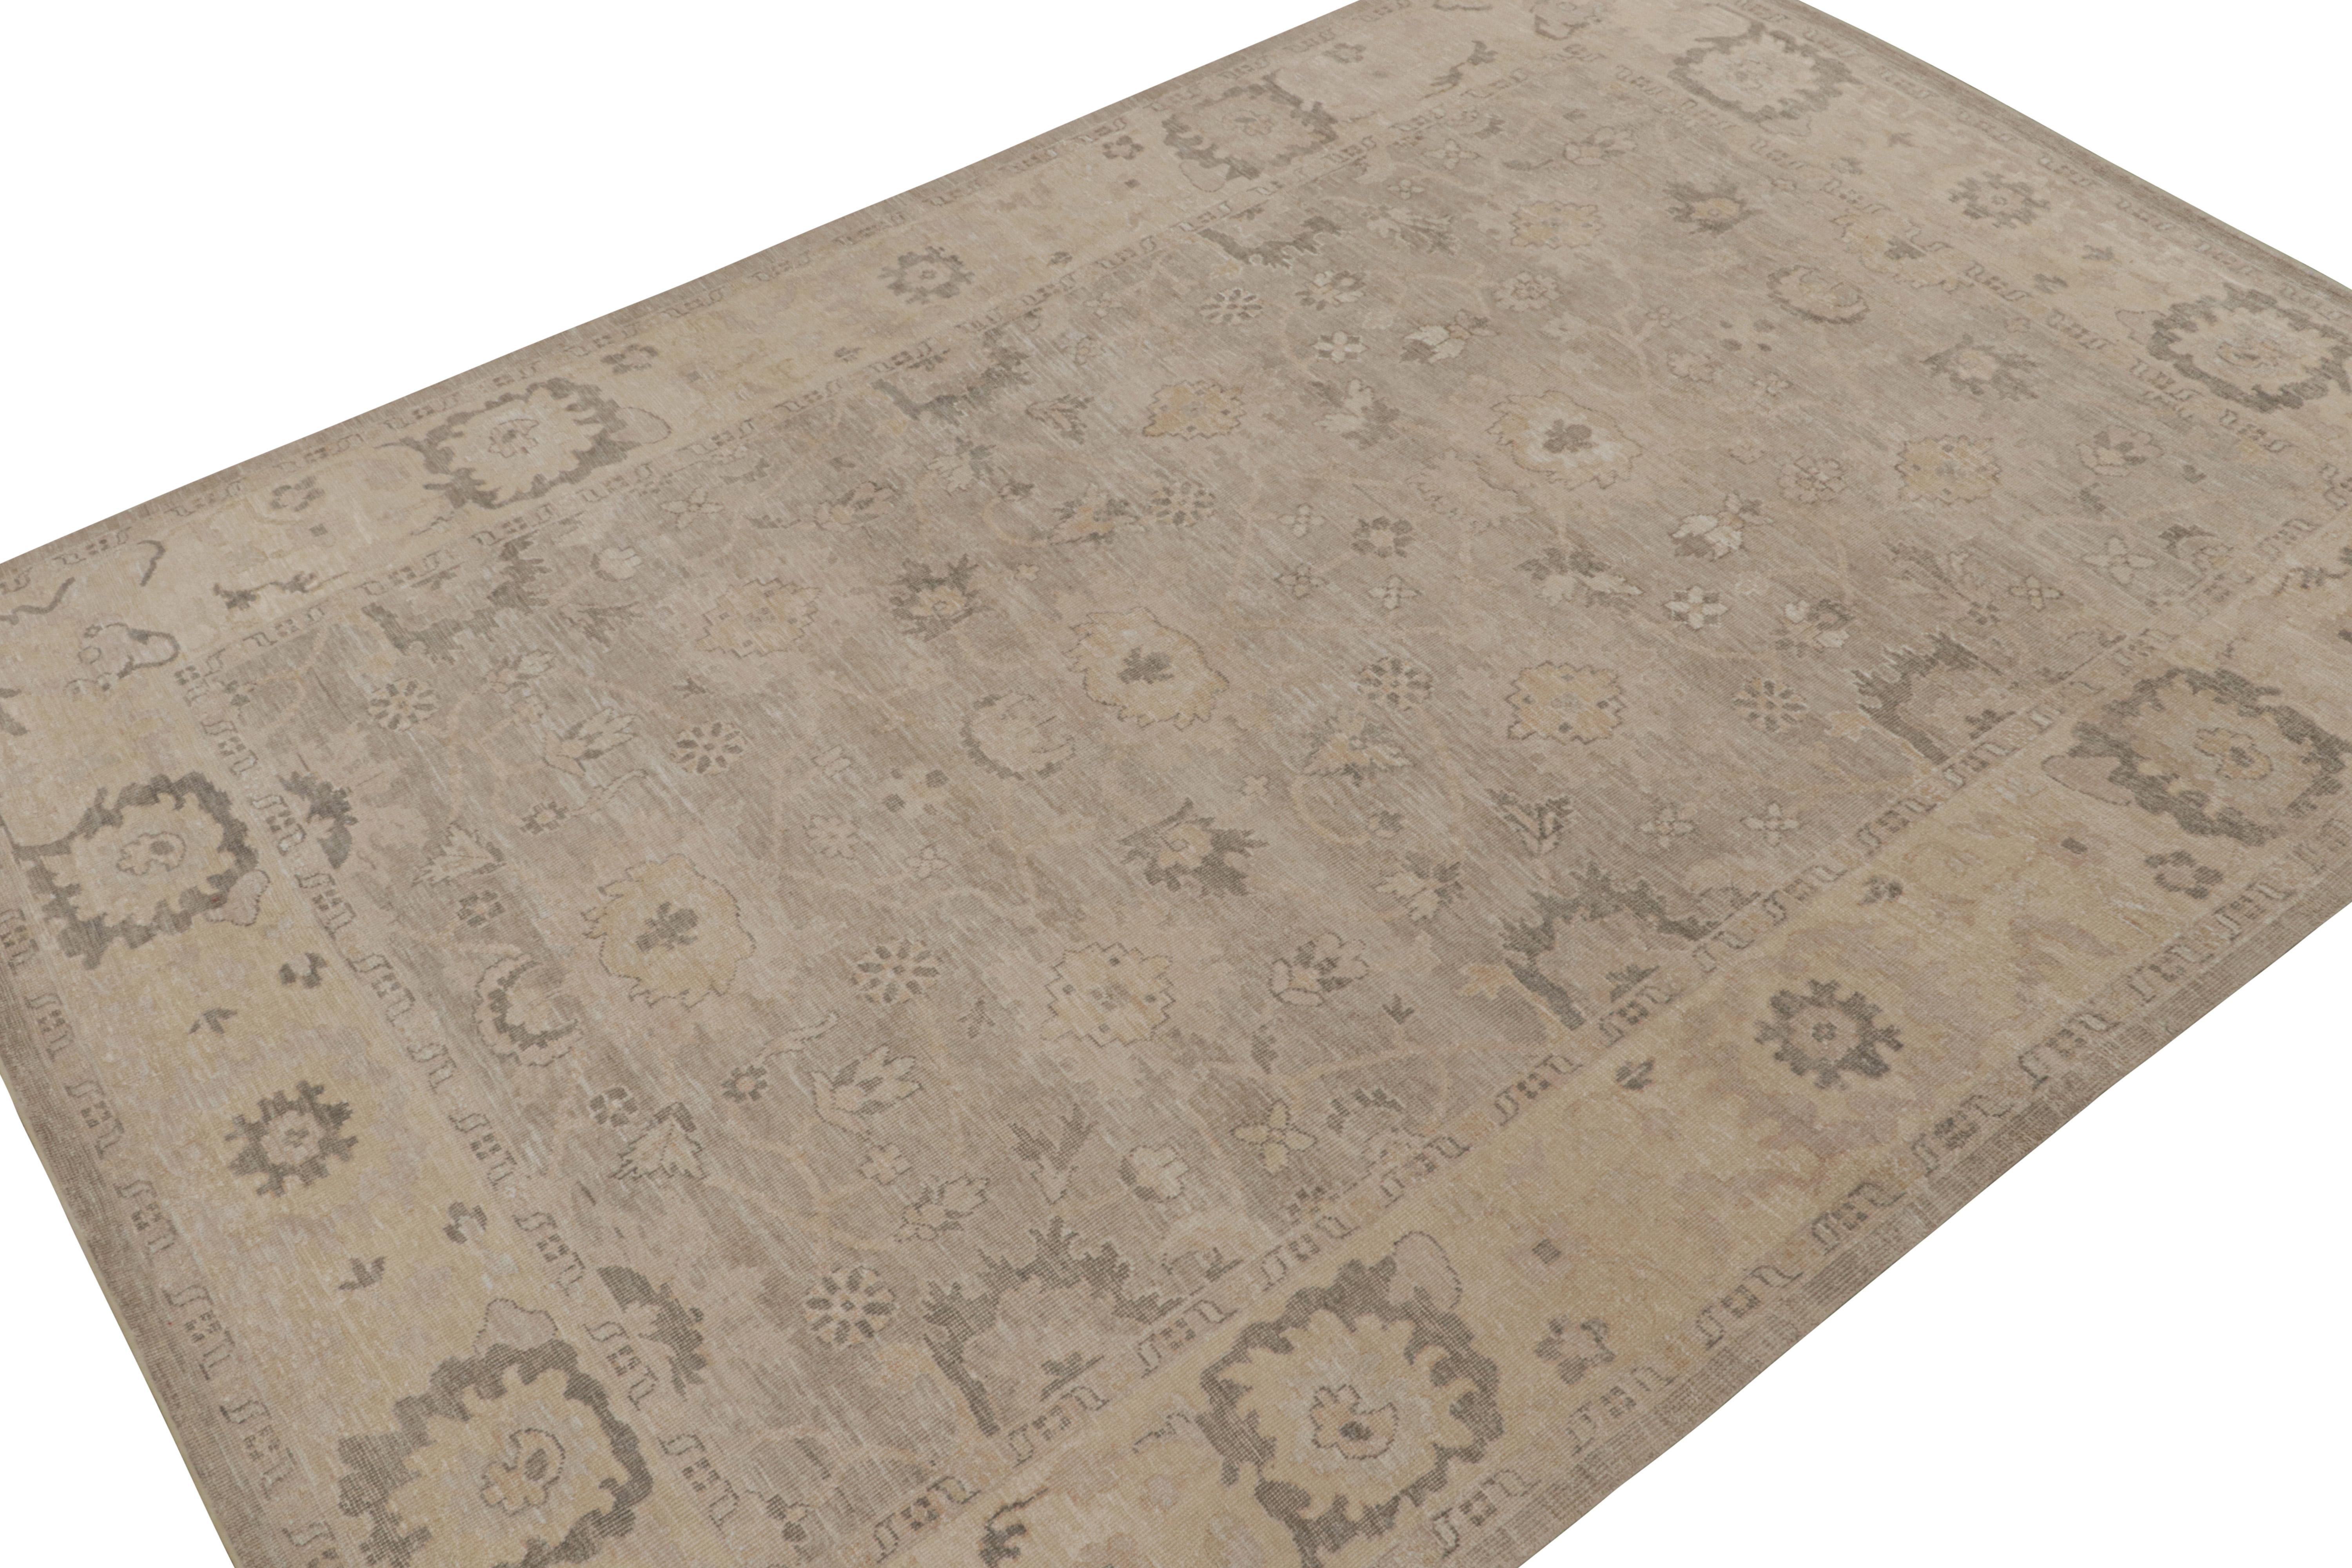 Handgeknüpft aus Seide, ein 10x14 Stück aus unserer neuen Teppichlinie in dieser Kollektion, die von antiken Oushak-Teppichen inspiriert ist.

Über das Design:

Dieses Stück erfreut sich eines floralen Musters in den Farben Grau und Beige. Das